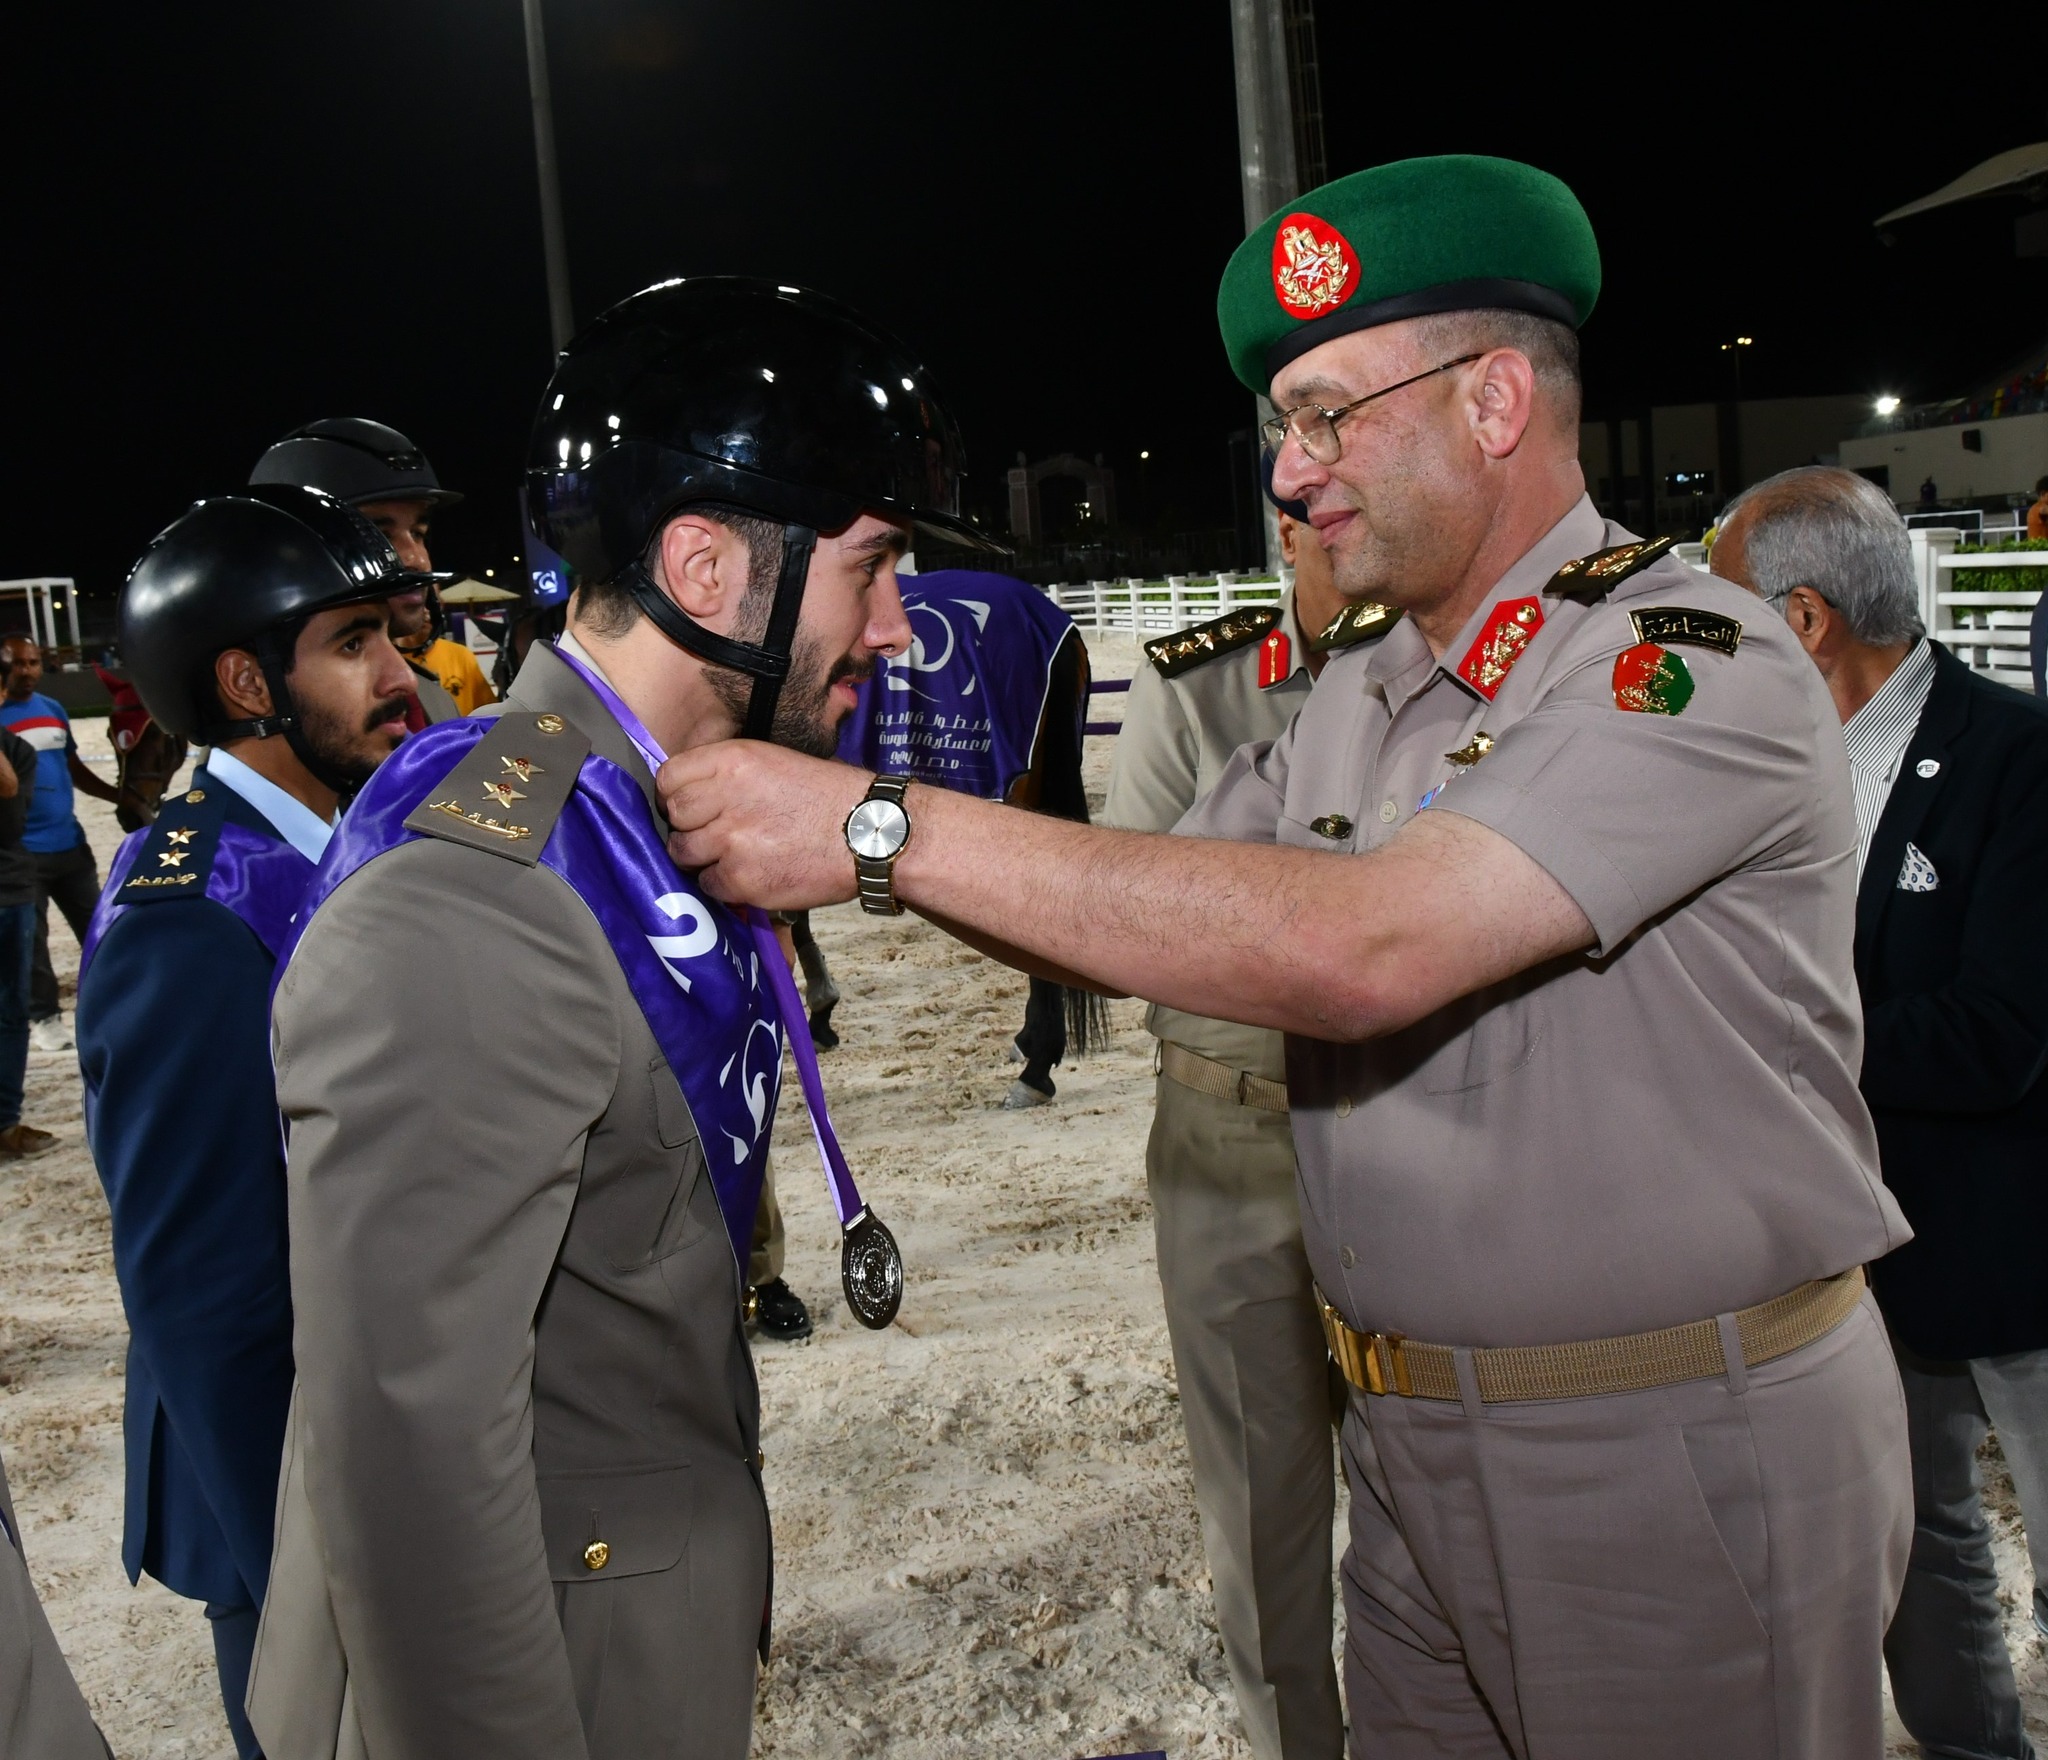 انطلاق فعاليات البطولة العربية العسكرية للفروسية بنادى الفروسية بمدينة مصر للألعاب الأولمبية